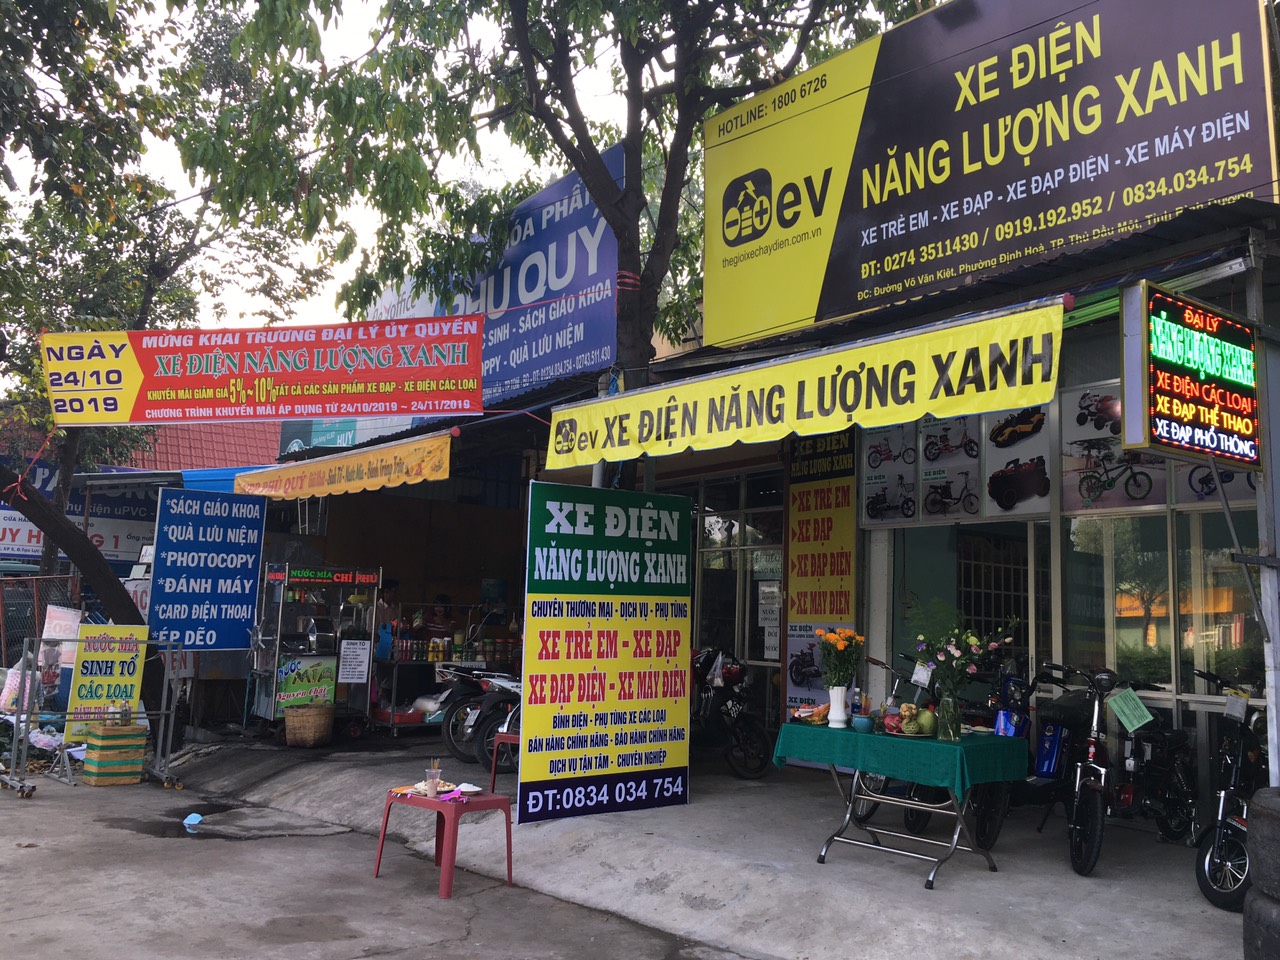 Xe Điện Năng Lượng Xanh tại Đường Võ Văn Kiệt, Phường Định Hoà, TP.Thủ Dầu Một, Tỉnh Bình Dương